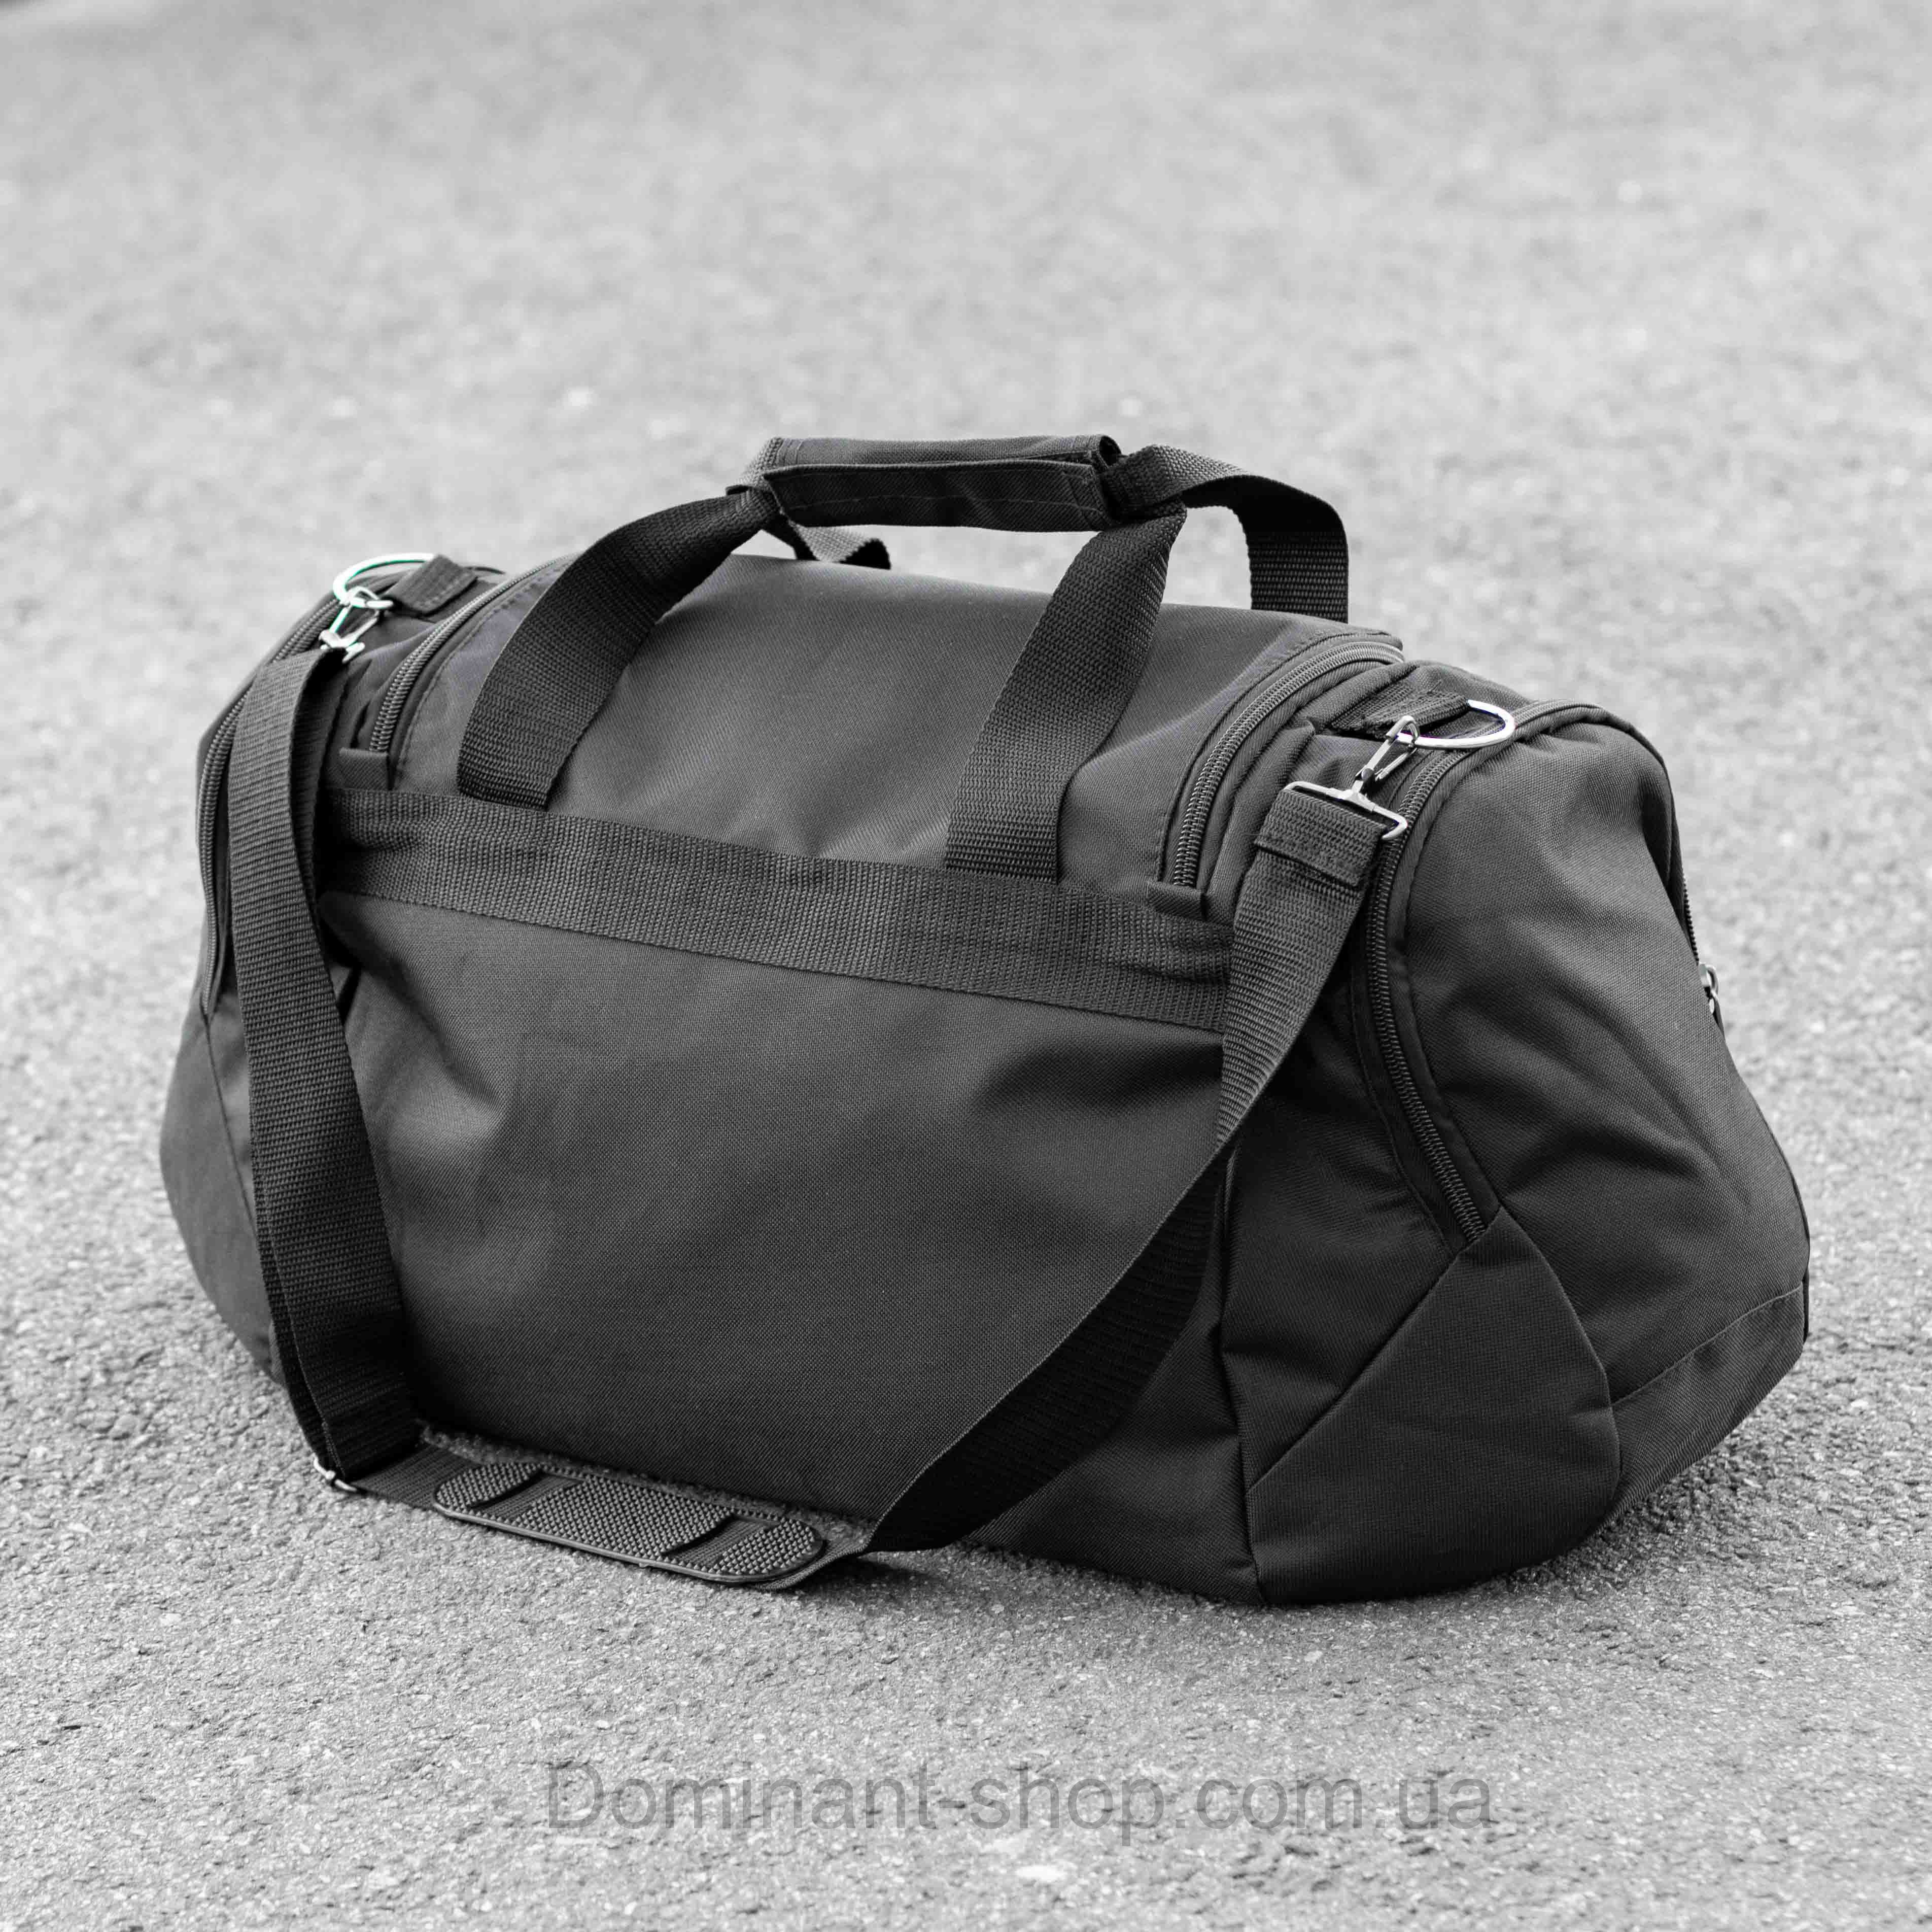 спортивна сумка Puma чорна для поїздок та тренувань на 36 літри Пума